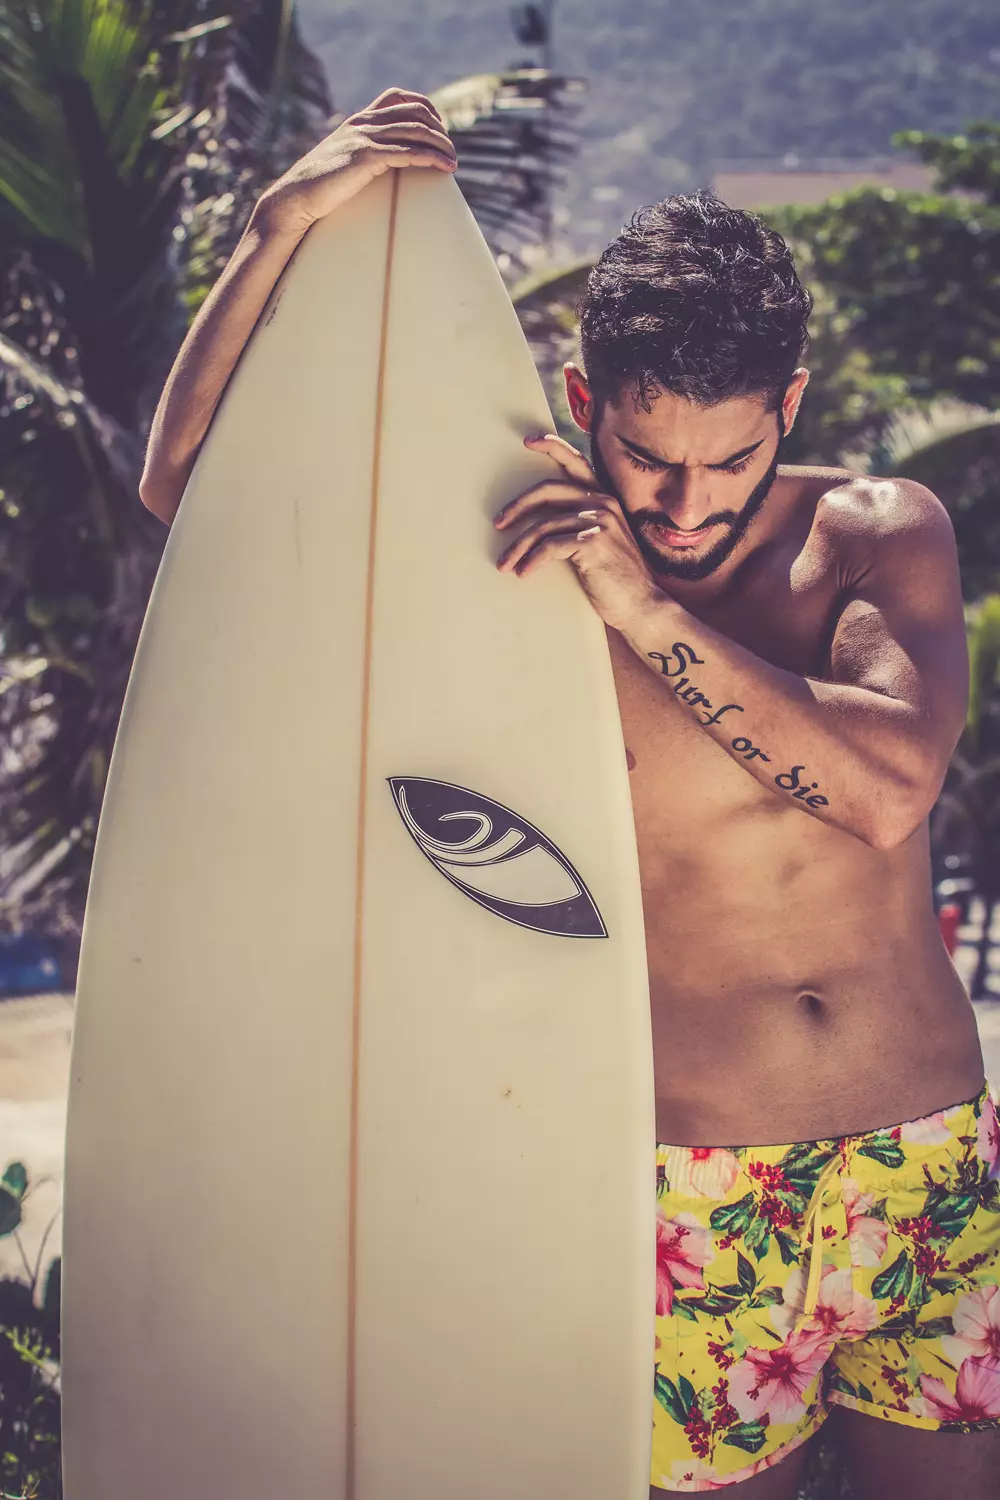 Allons à Rio !!! Rencontre avec William Magalhães dans une session ensoleillée de good vibe shootée par Simone Fransisco. Surfeur et acteur, photographié sur la plage d'Arpoador Rio de Janeiro.